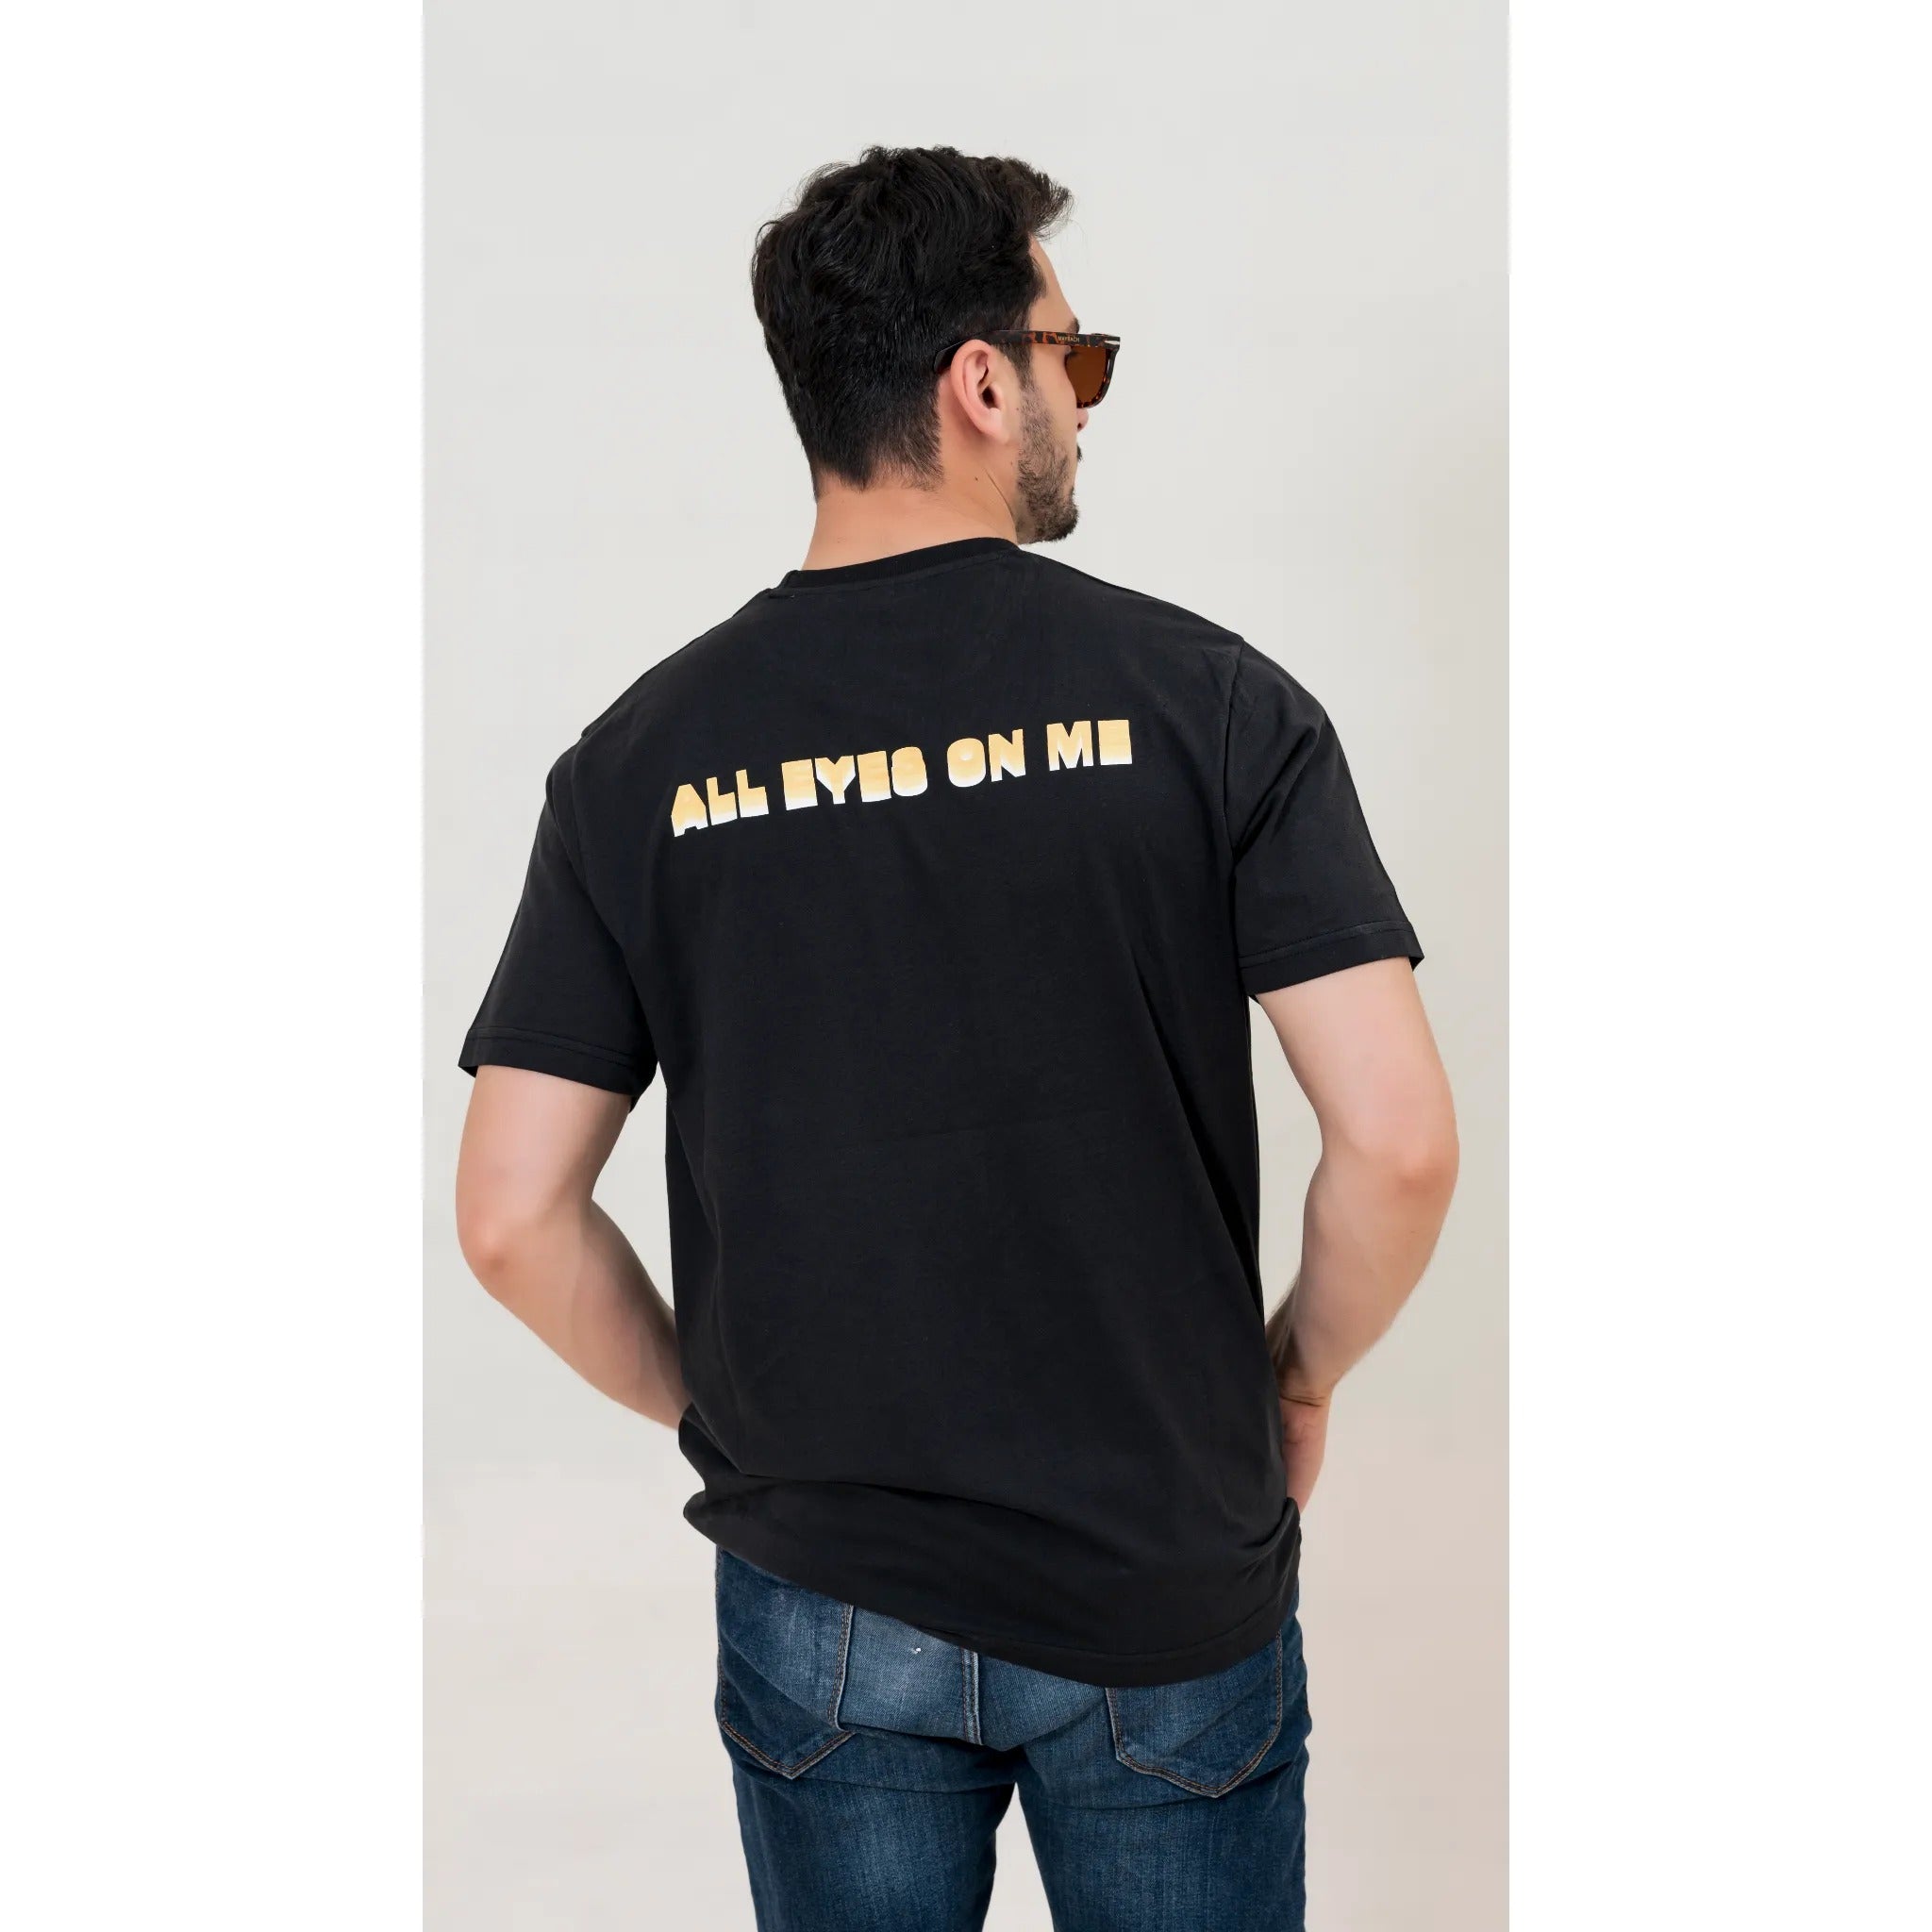 X-Fit Eat It Graphic T-Shirt For Men-2363